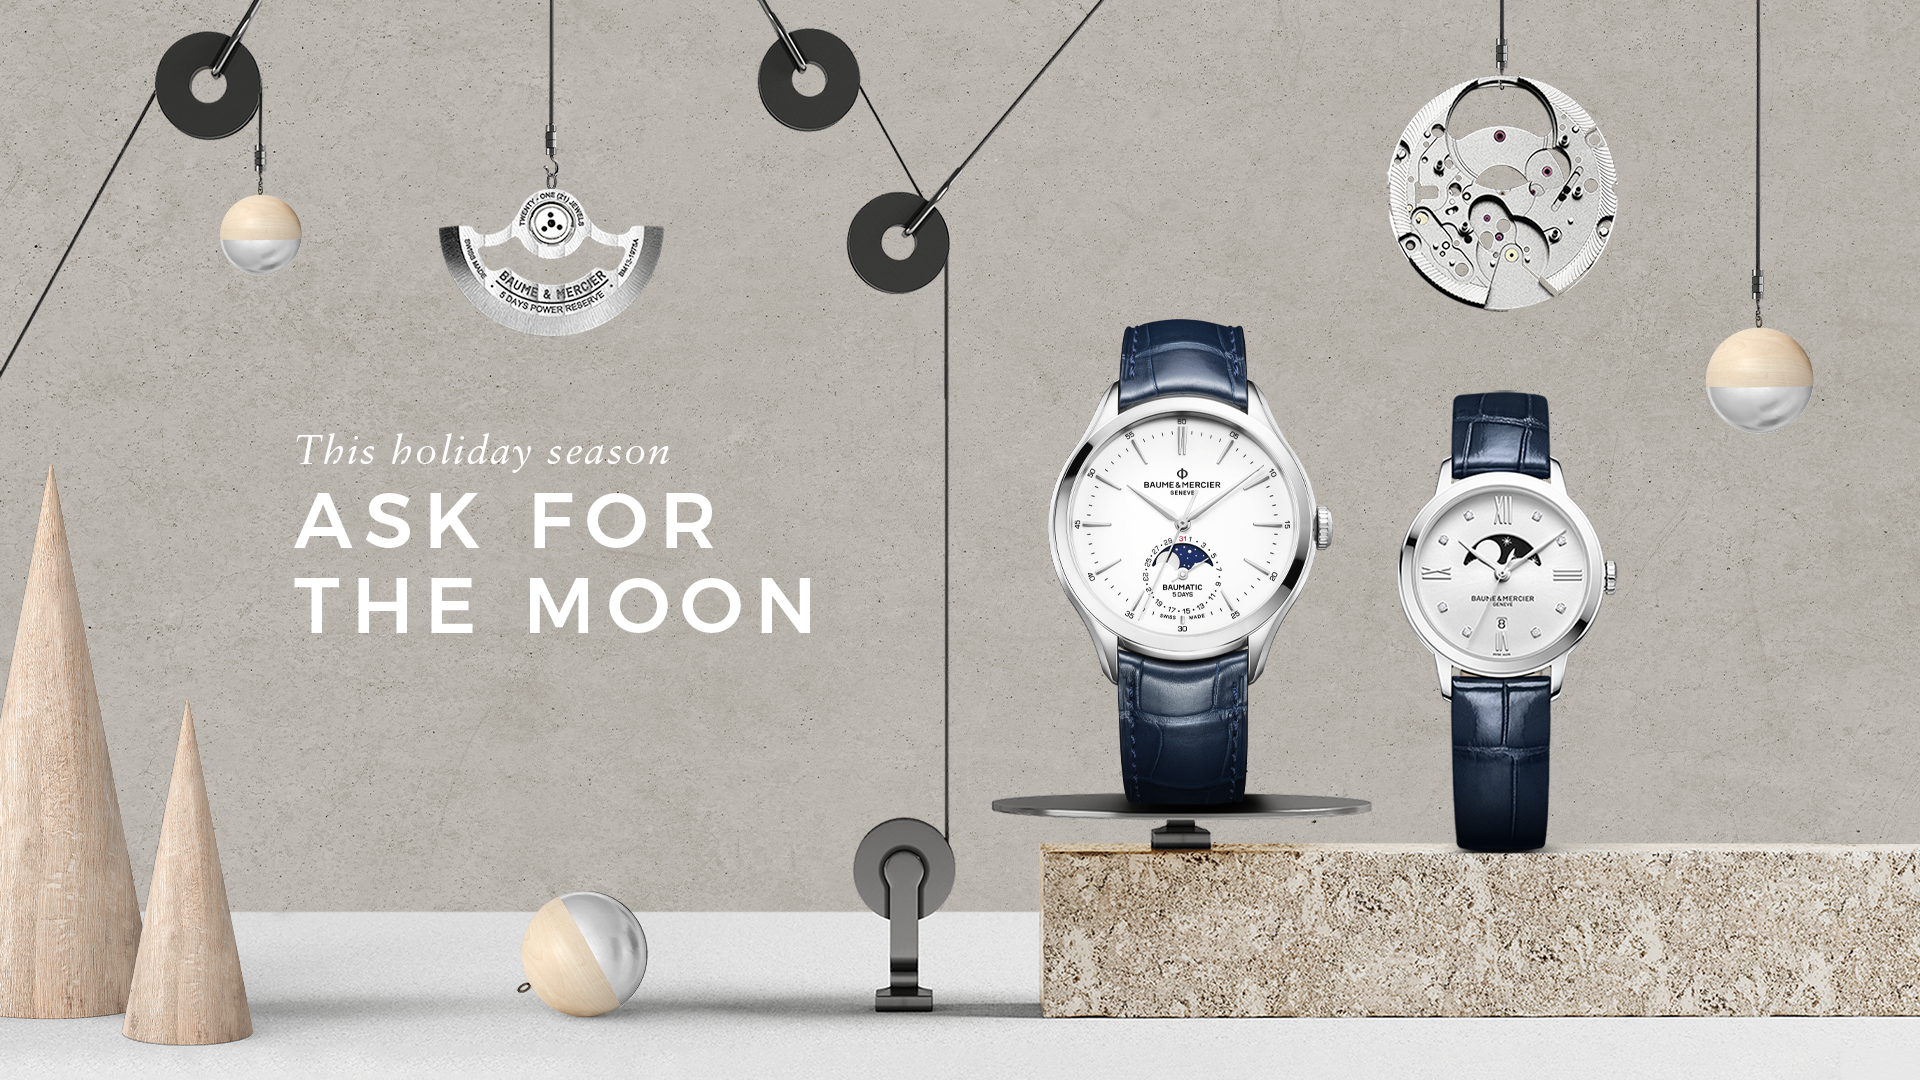 Rayakan Liburan Akhir Tahun dengan Baume & Mercier “Ask for the Moon”